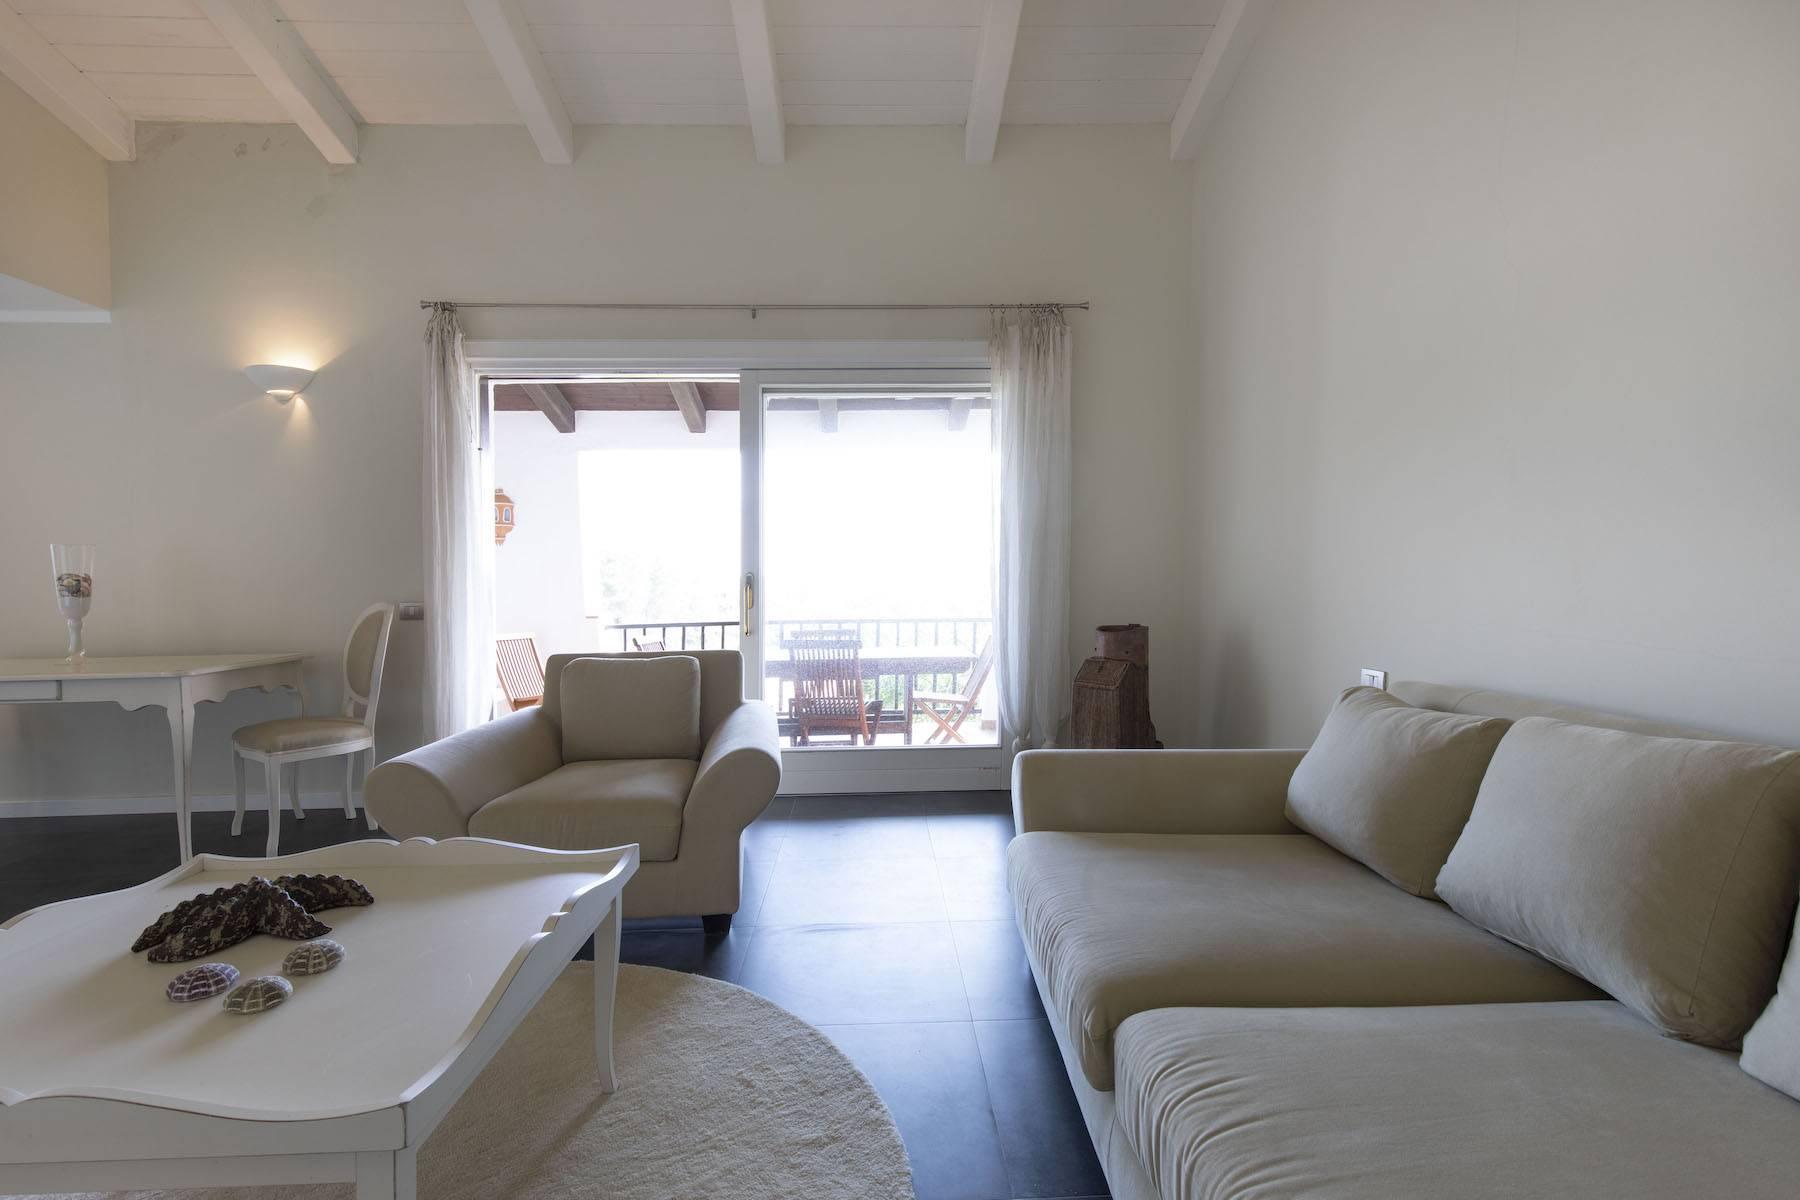 Spazioso e luminoso appartamento con affaccio sul mare a Liscia di Vacca. - 3